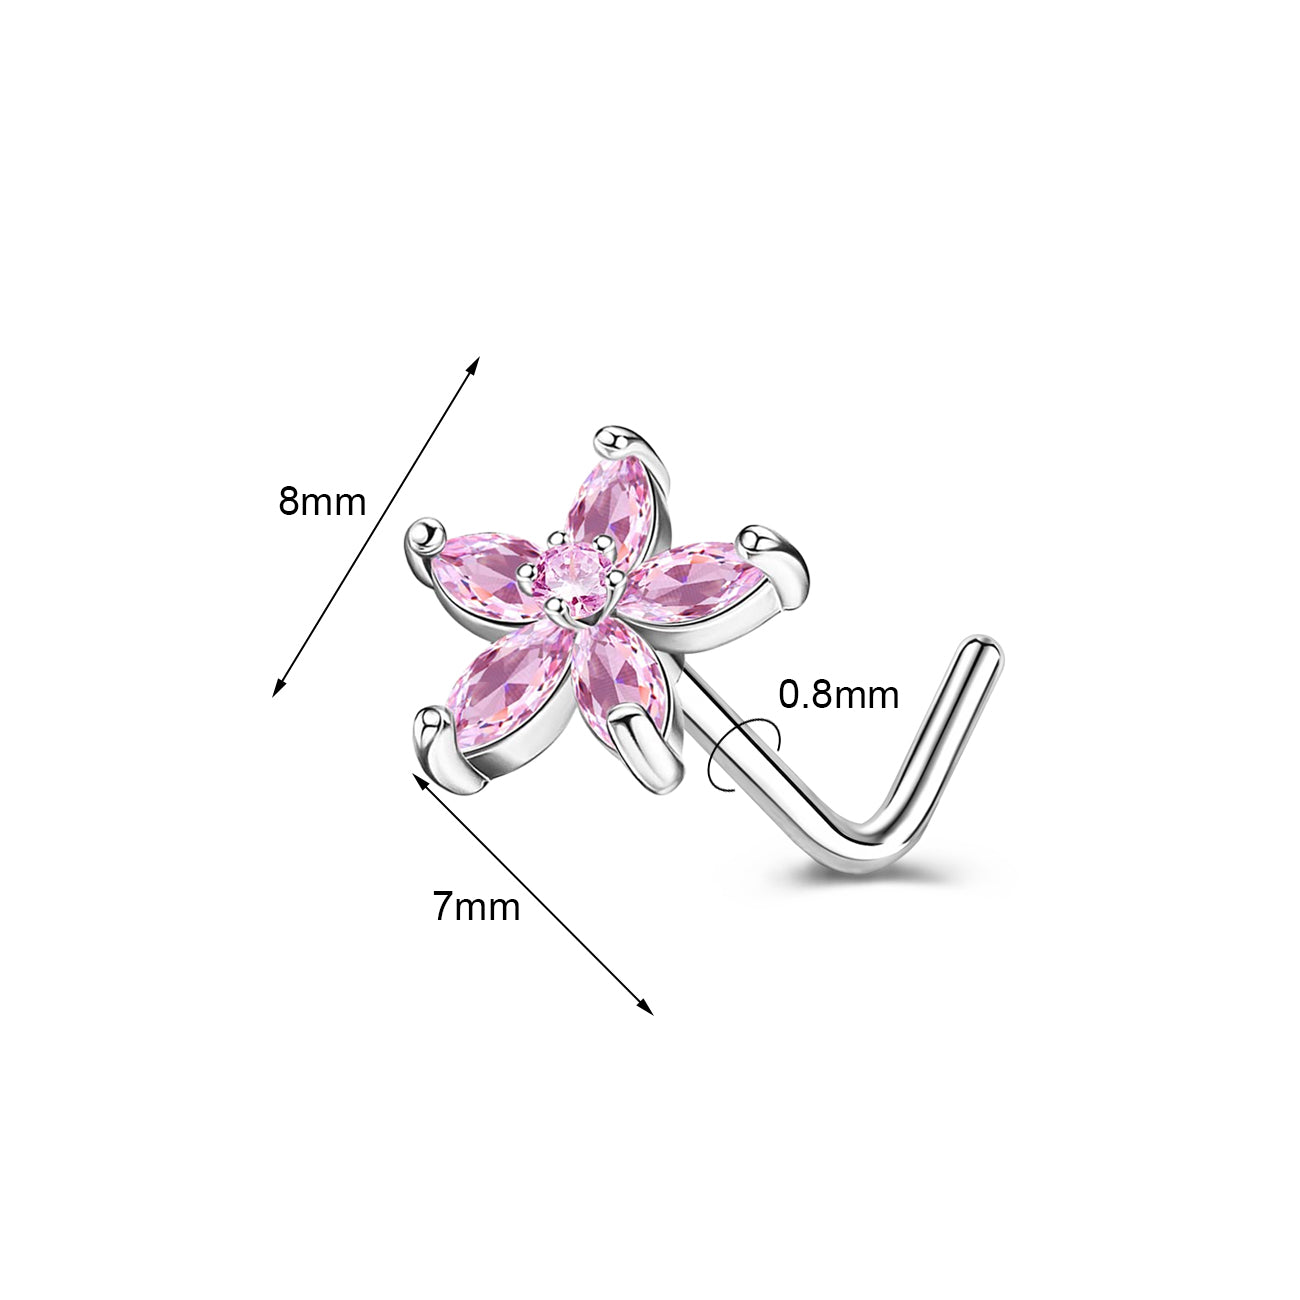 20g-copper-flower-nose-stud-piercing-l-shaped-nostril-piercing-pink-crystal-nose-ring